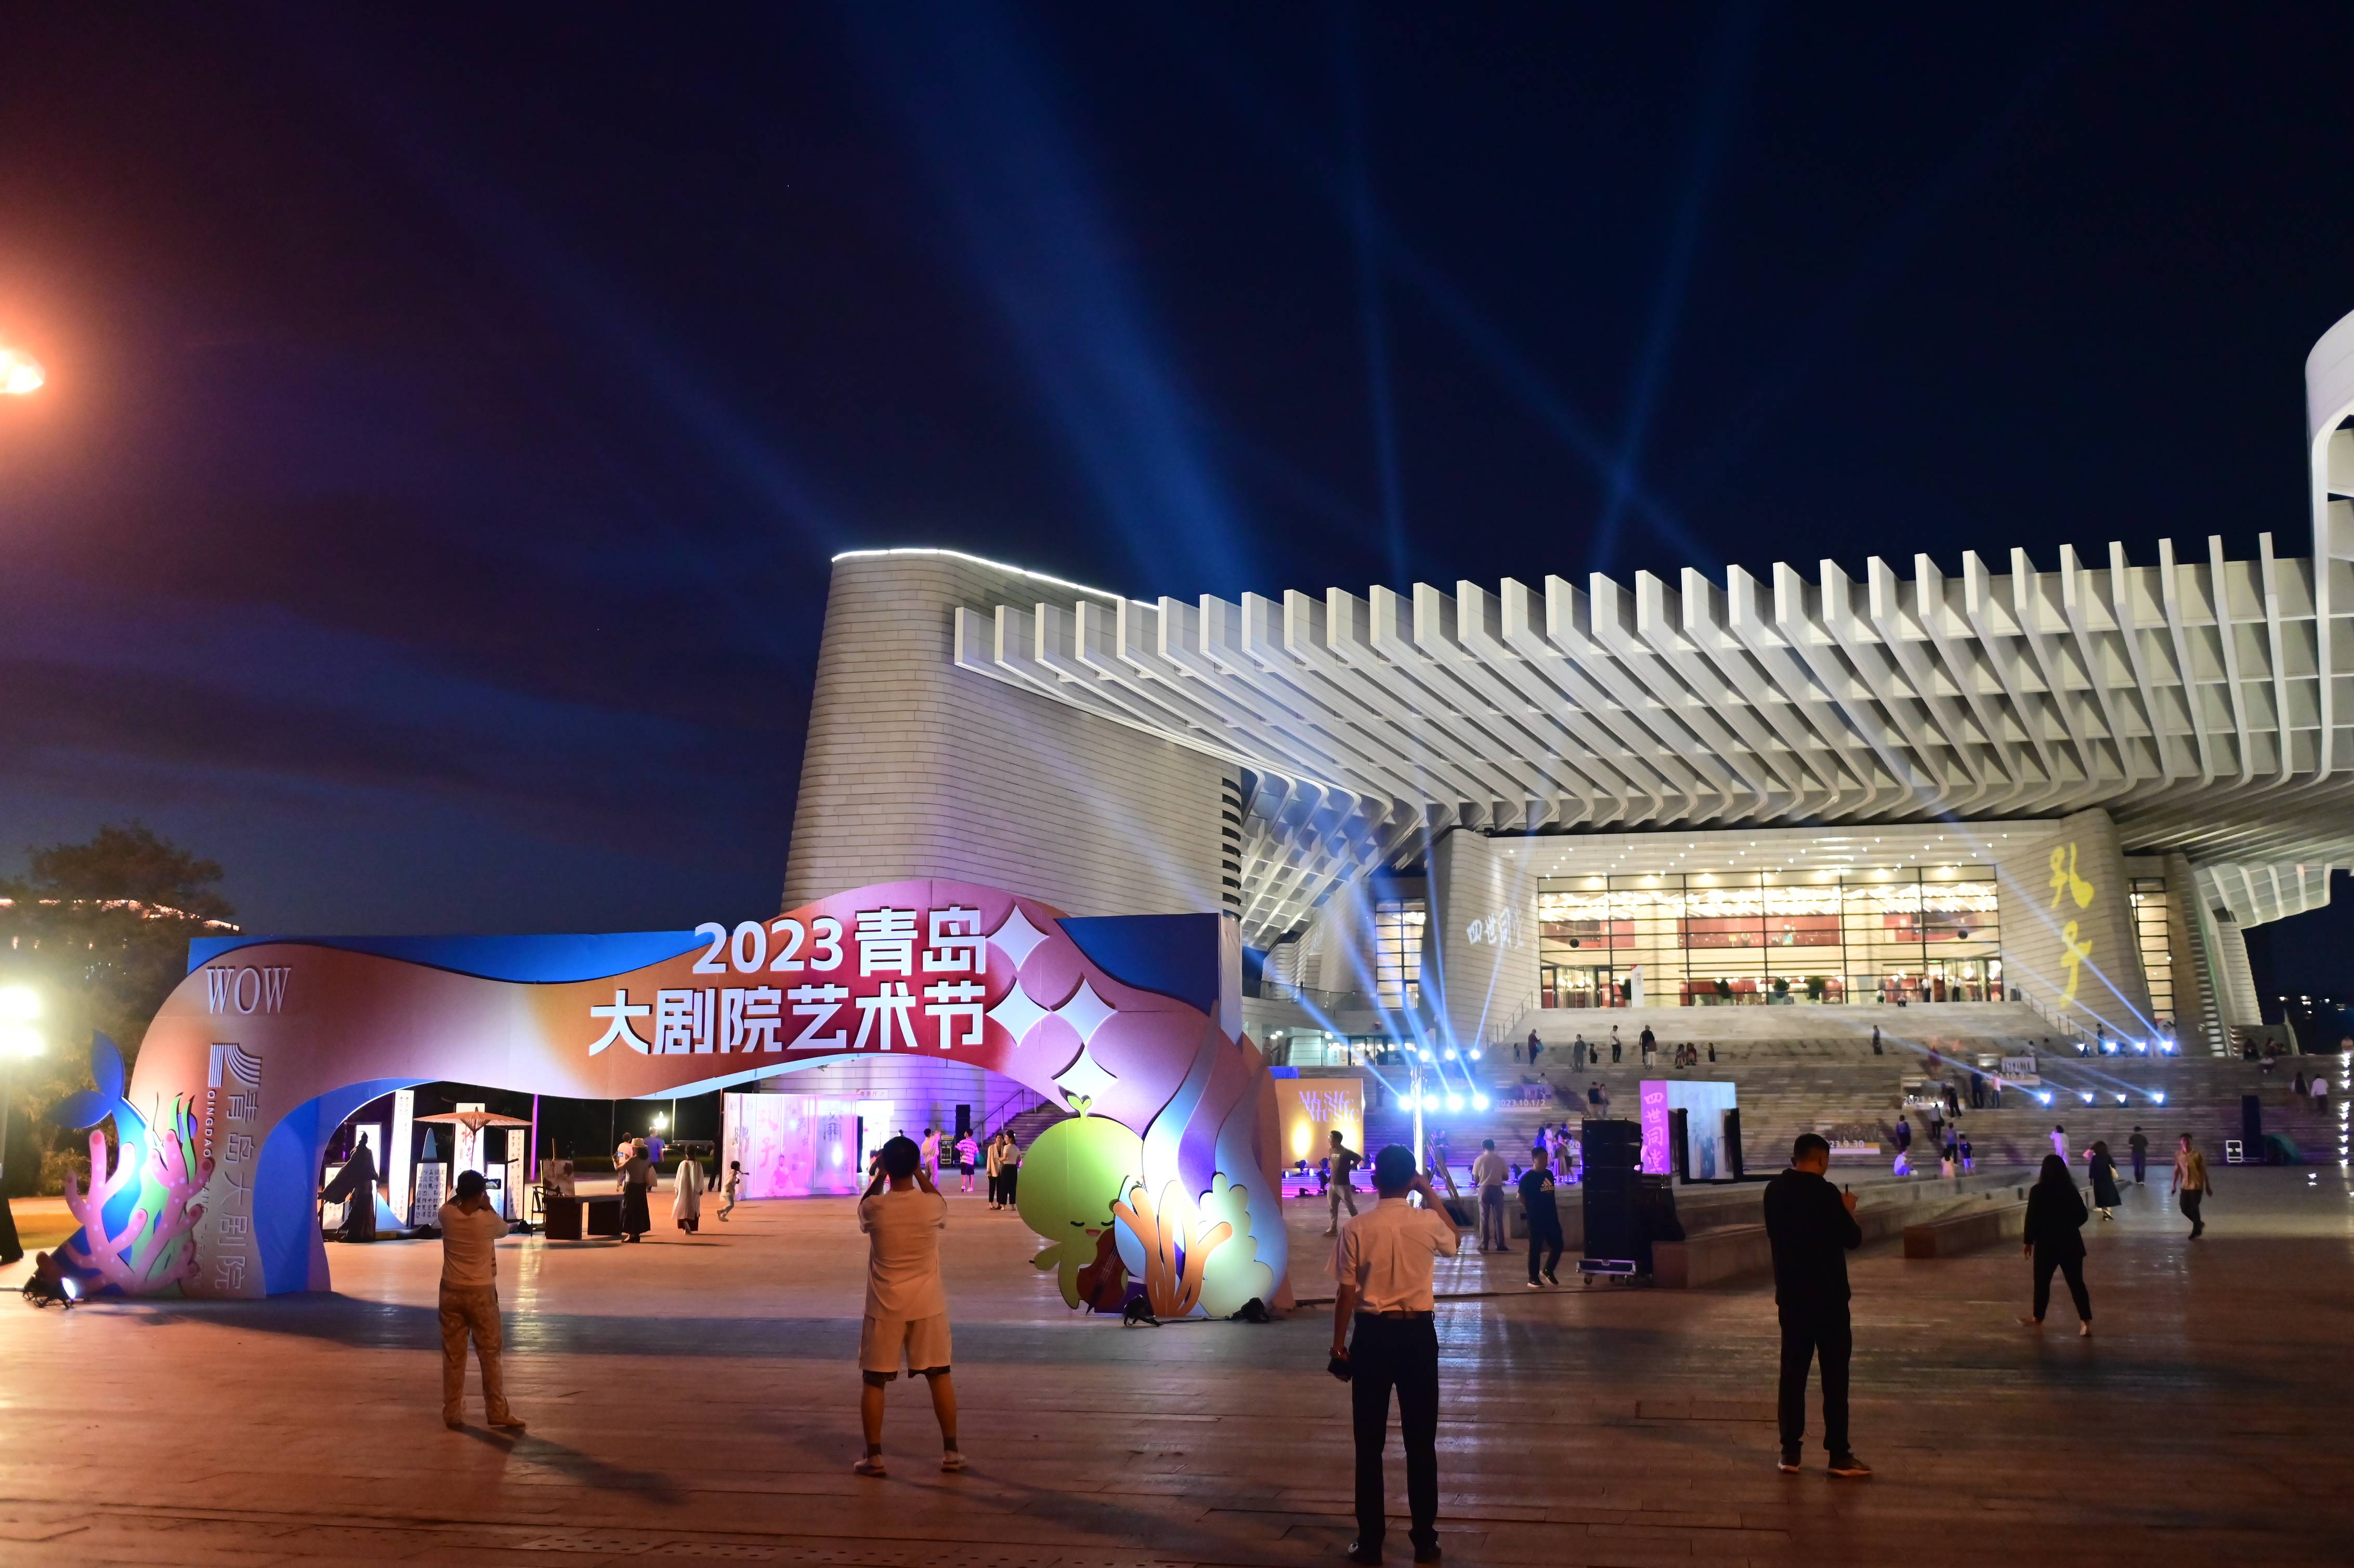 融通中外,艺汇青岛——2023青岛·大剧院艺术节完美落幕